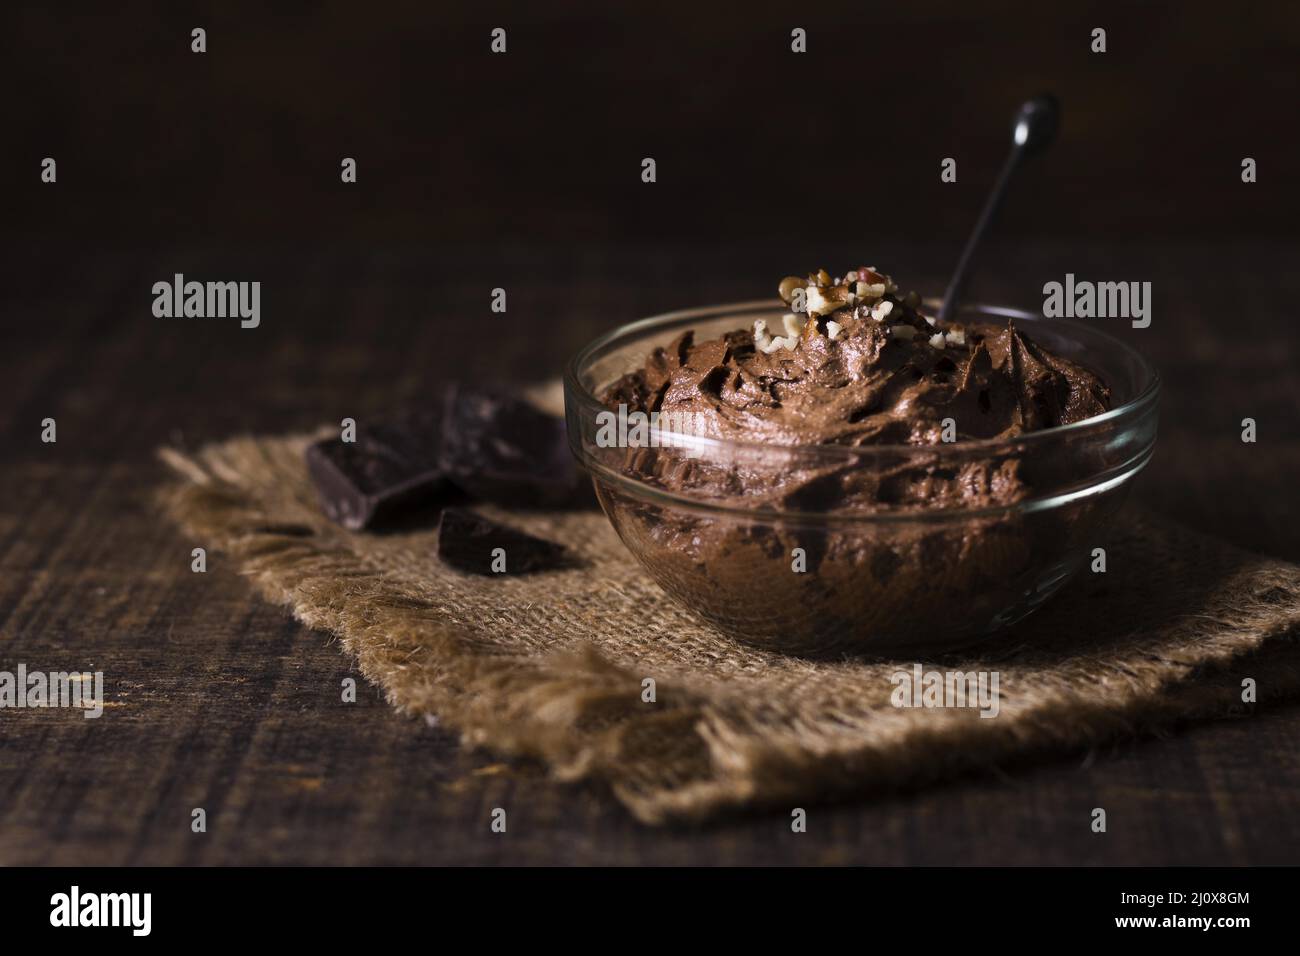 Fermez la délicieuse mousse au chocolat que vous pourrez déguster. Photo de haute qualité Banque D'Images